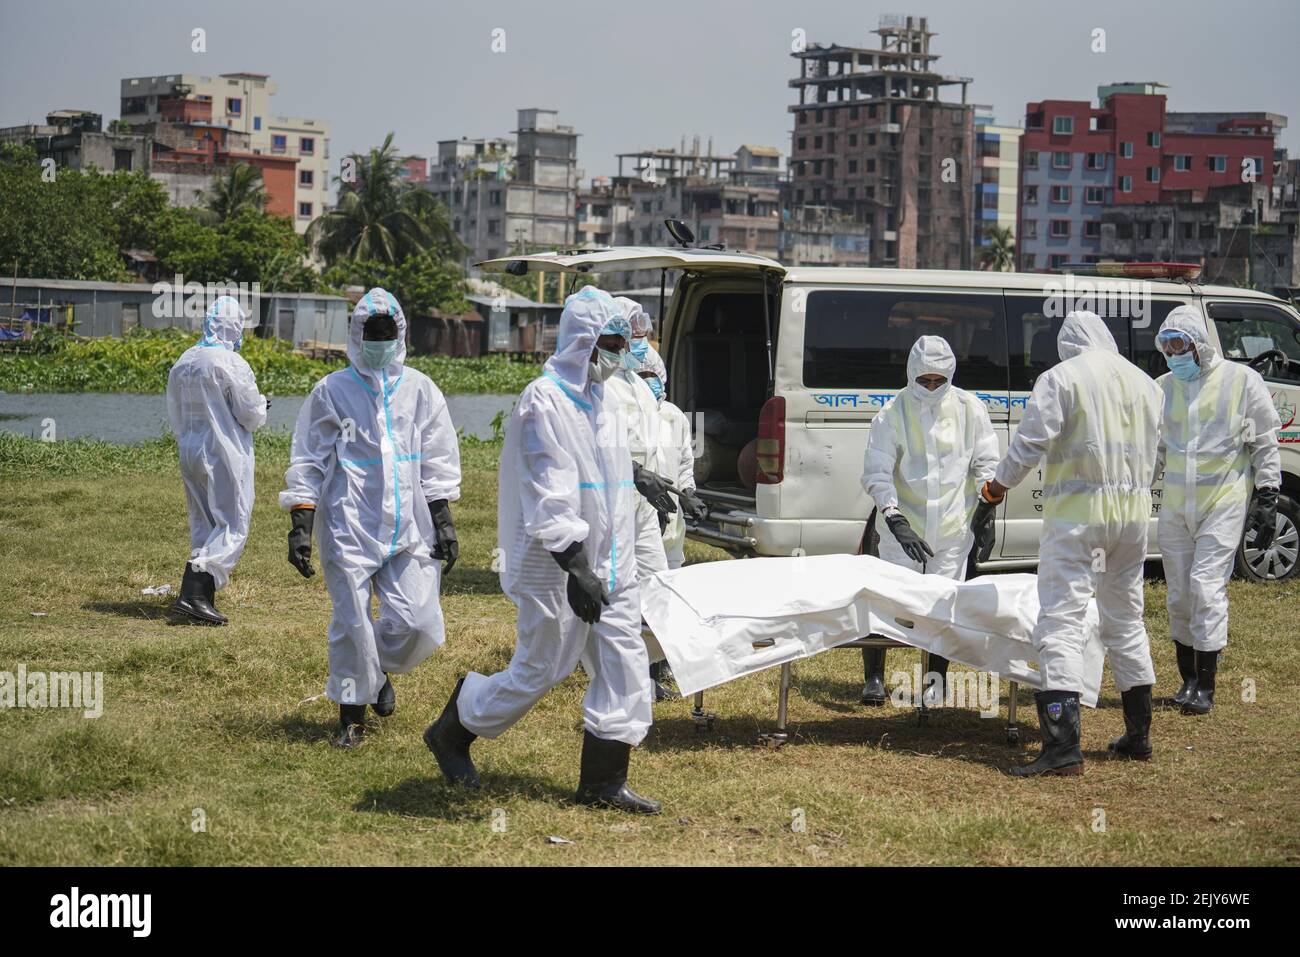 Gesundheit und Totengräber Arbeiter in Schutzanzügen beten am 6. April 2020 auf dem öffentlichen Friedhof in Dhaka, Bangladesch, für den Leichnam eines Coronavirus-Opfers. Bangladesch hat laut den IEDCR-Beamten 123 Fälle bestätigt, von denen 12 durch das Coronavirus (COVID-19) getötet wurden. (Foto von Zabed Hasnain Chowdhury/Sipa USA) Stockfoto